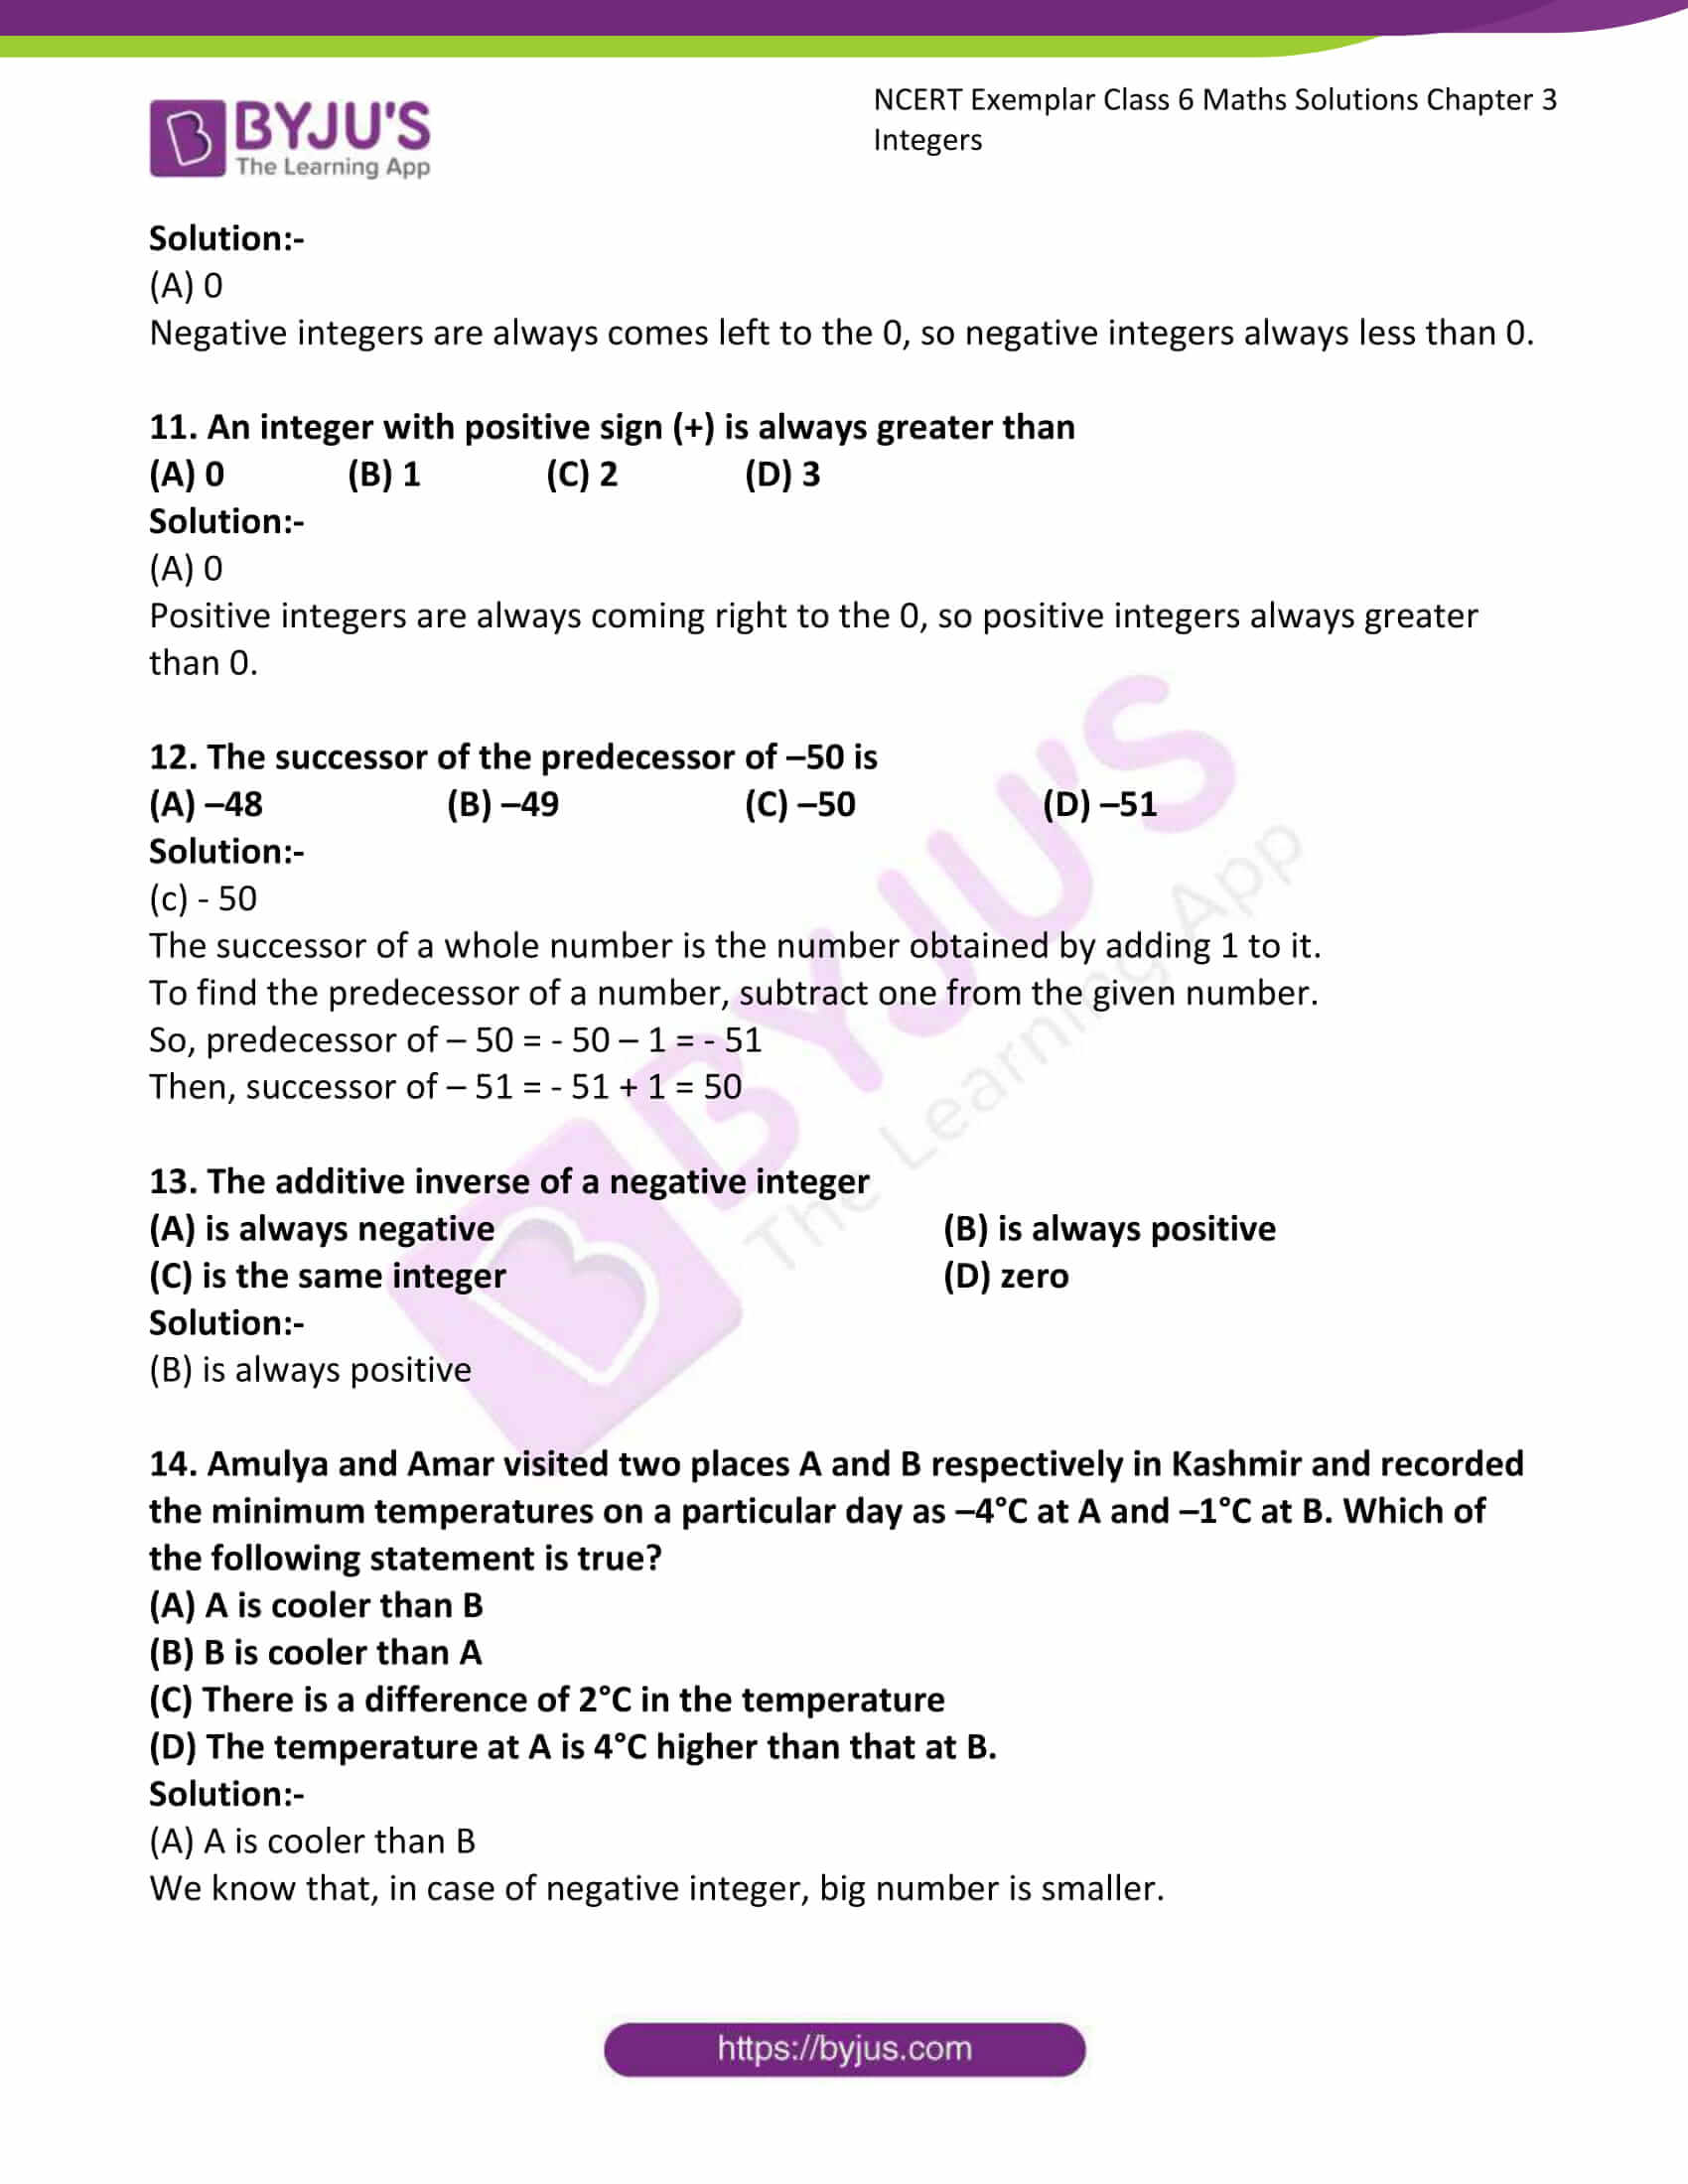 NCERT Exemplar Solutions For Class 6 Maths Chapter 3 Integers Click